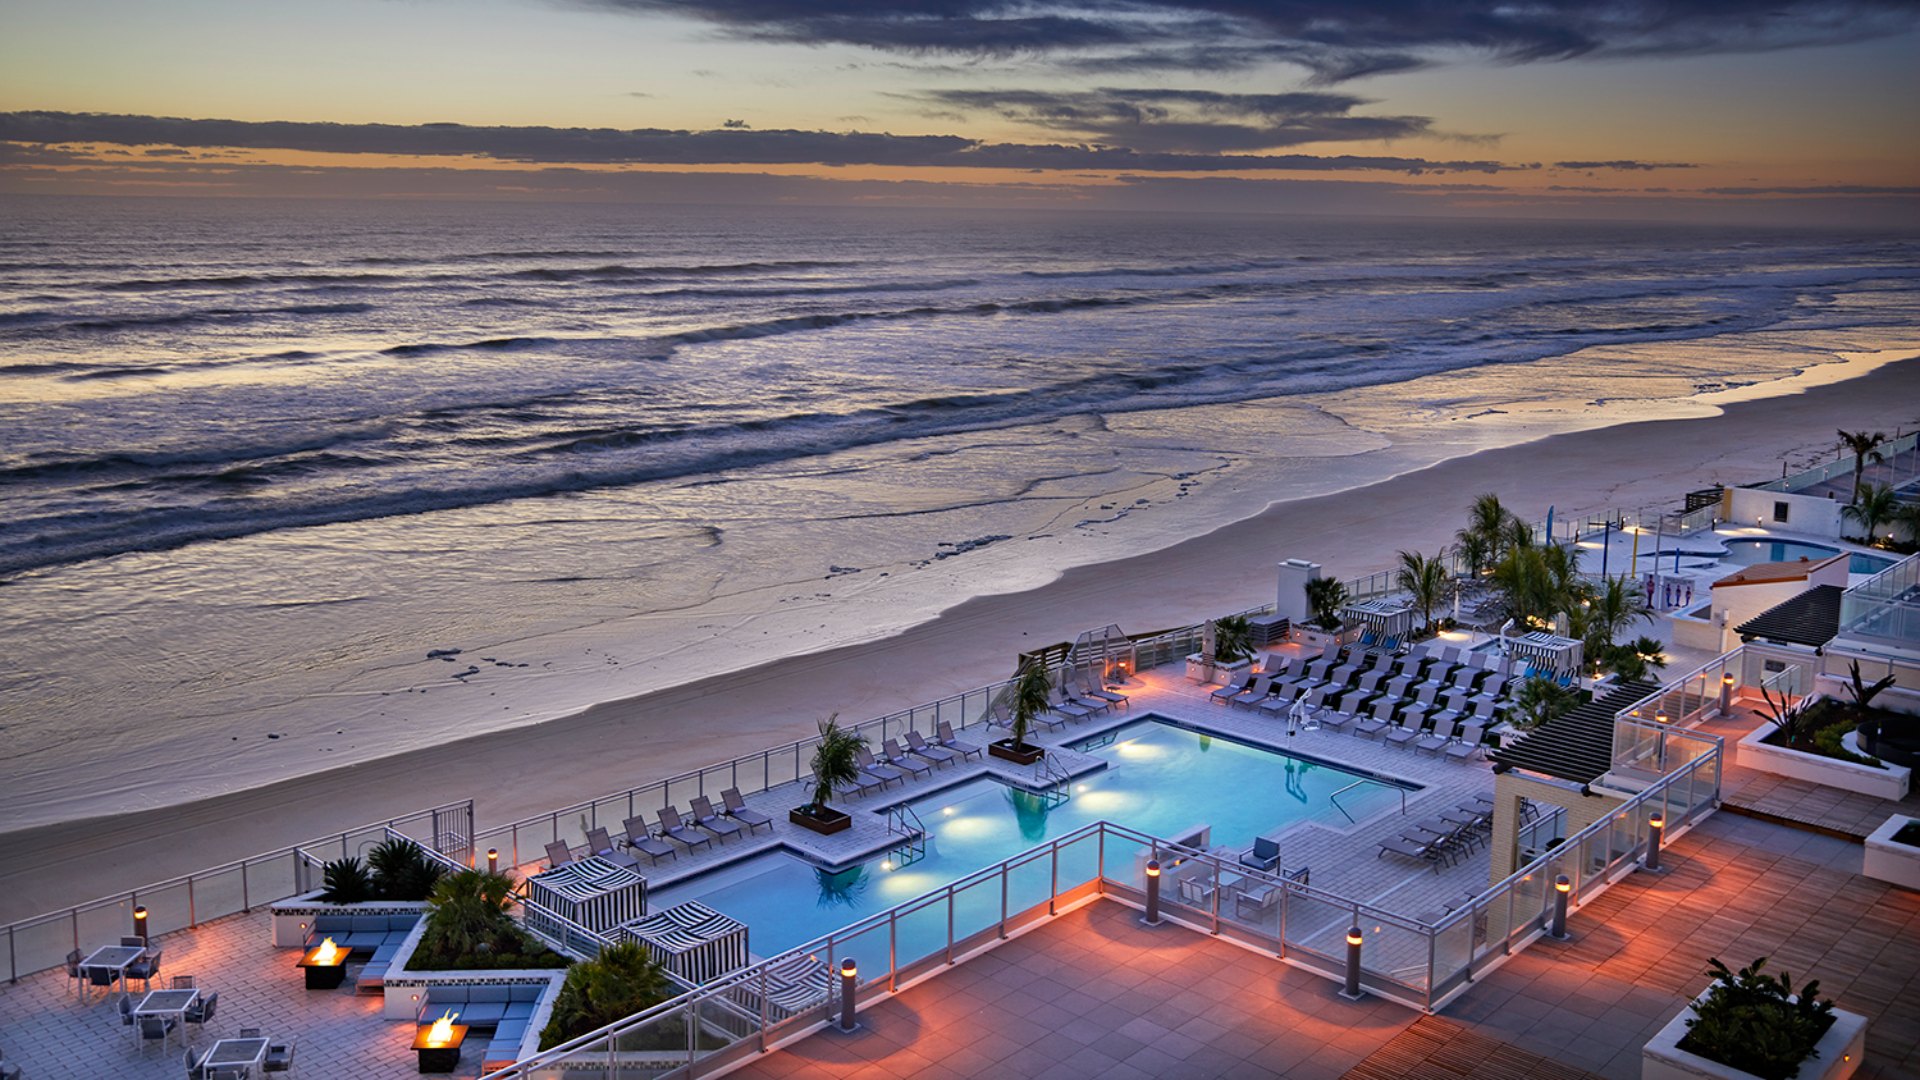 The Hard Rock Hotel Daytona Beach